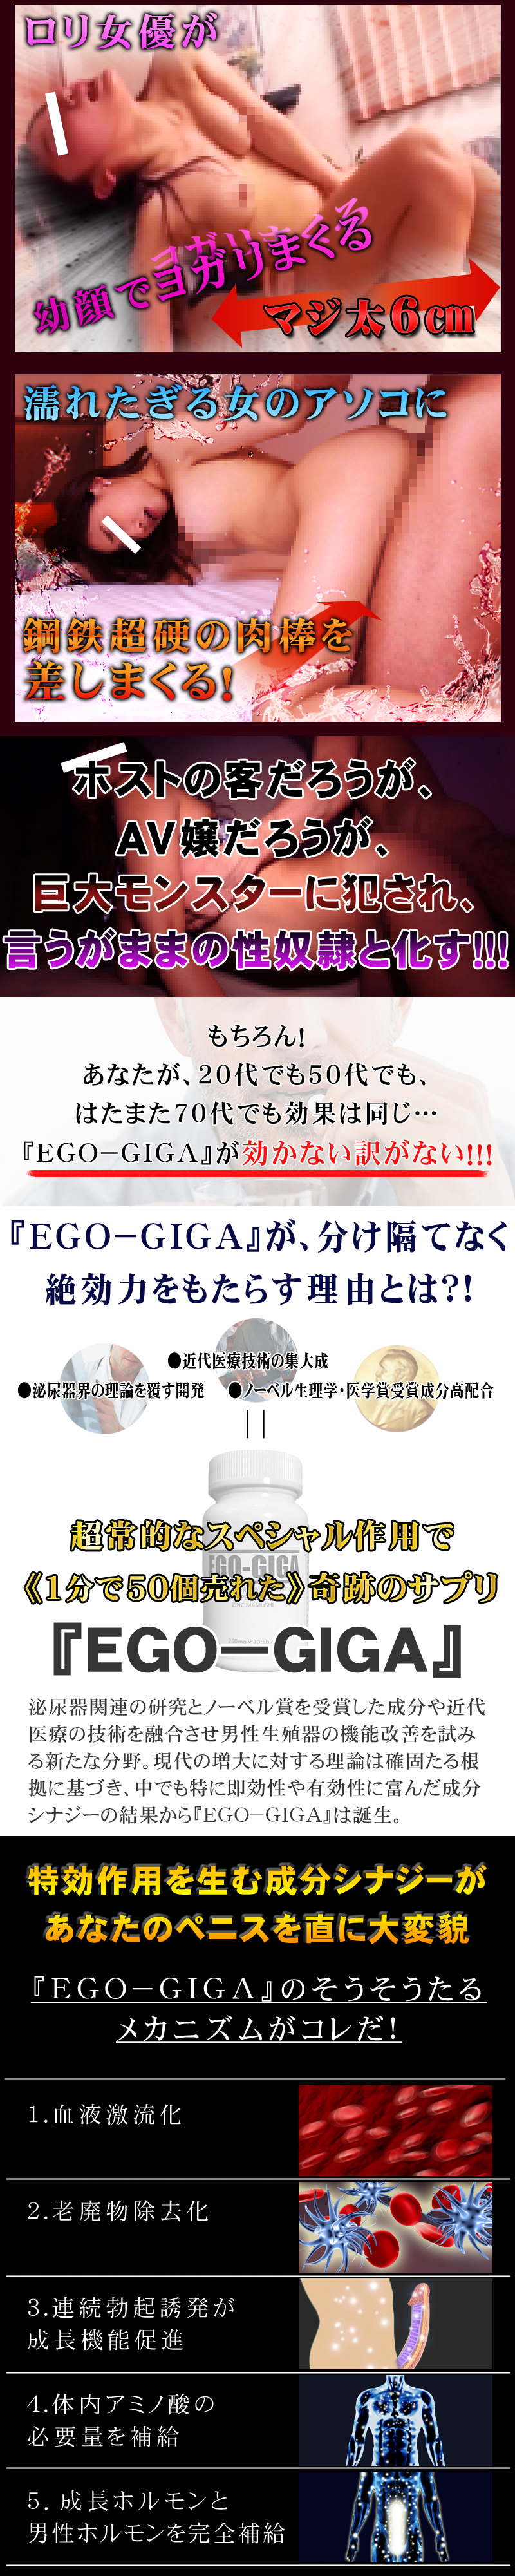 EGO-GIGSA(エゴギガ)